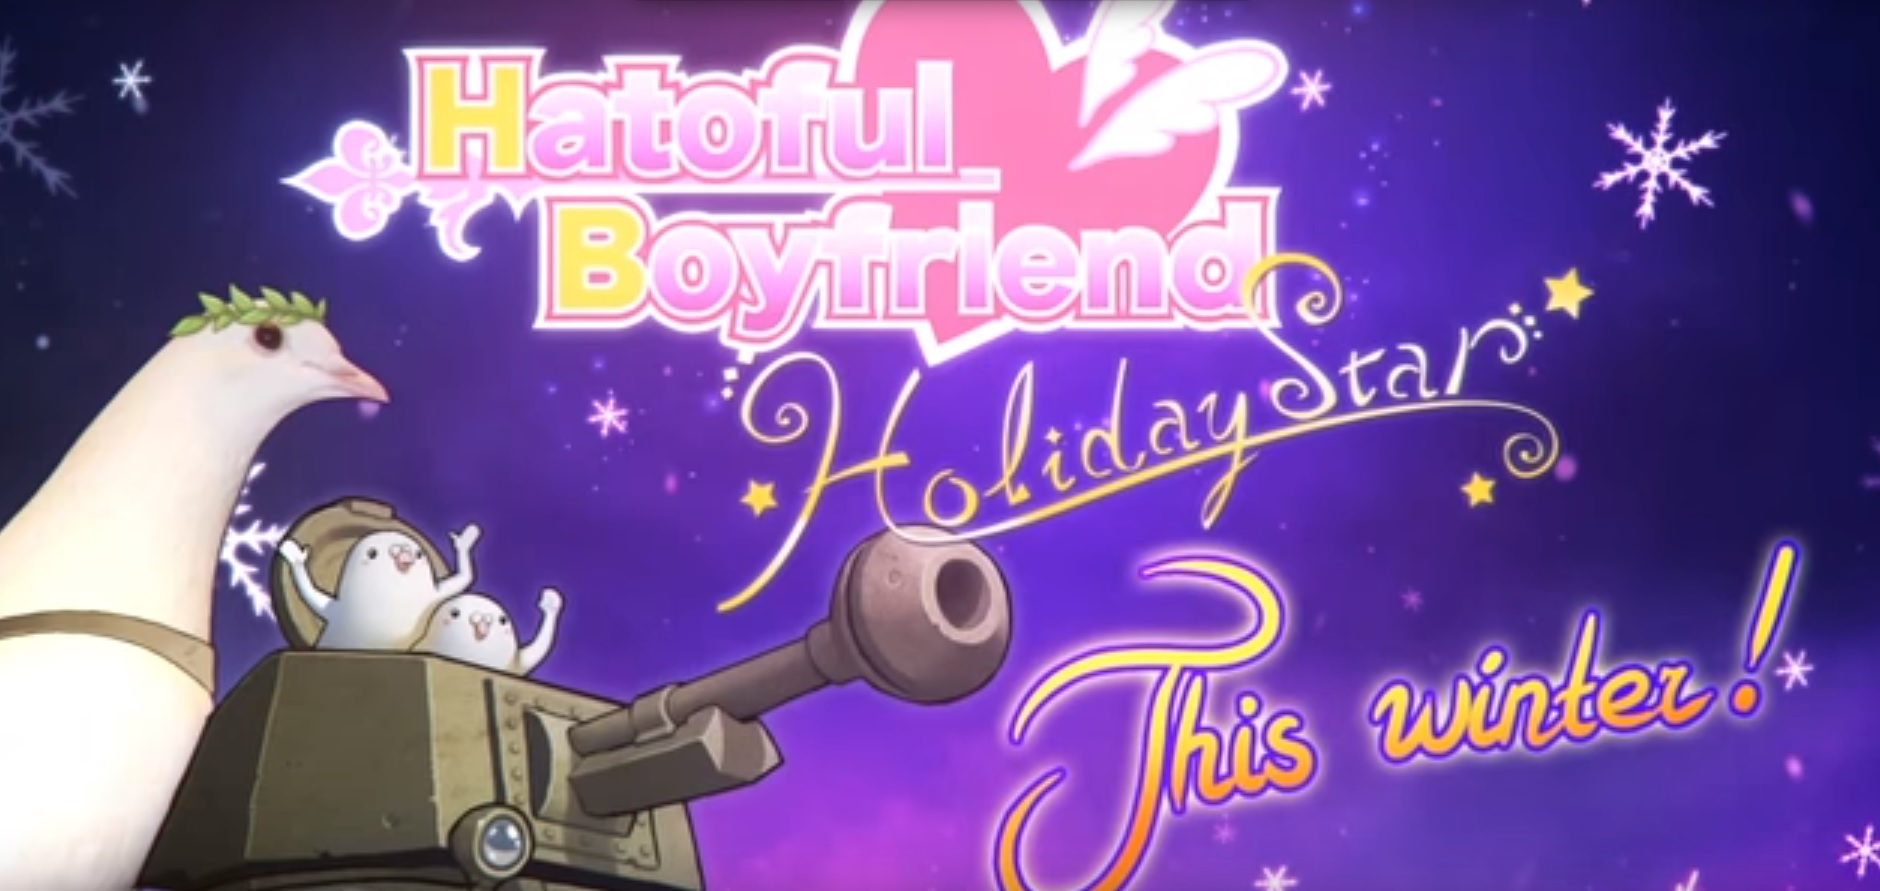 hatoful boyfriend holiday star walkthrough